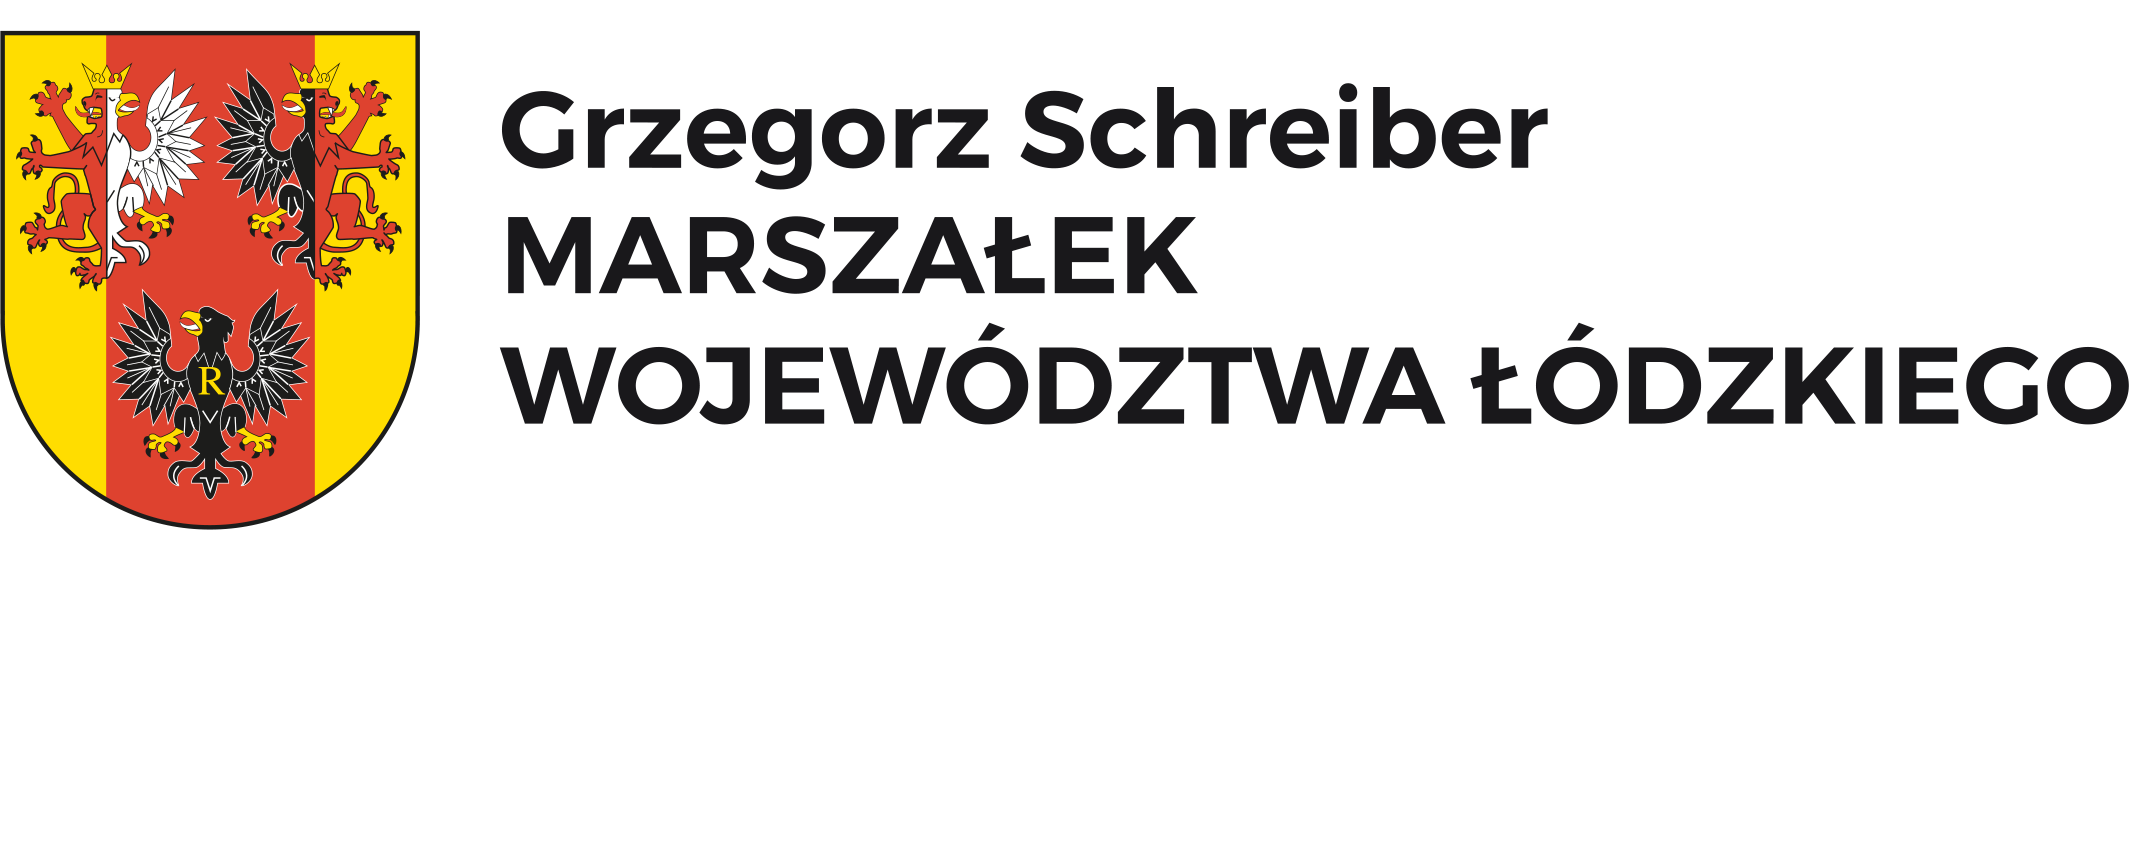 Marszałek Województwa Łódzkiego Tobiasz Grzegorz Schreiber